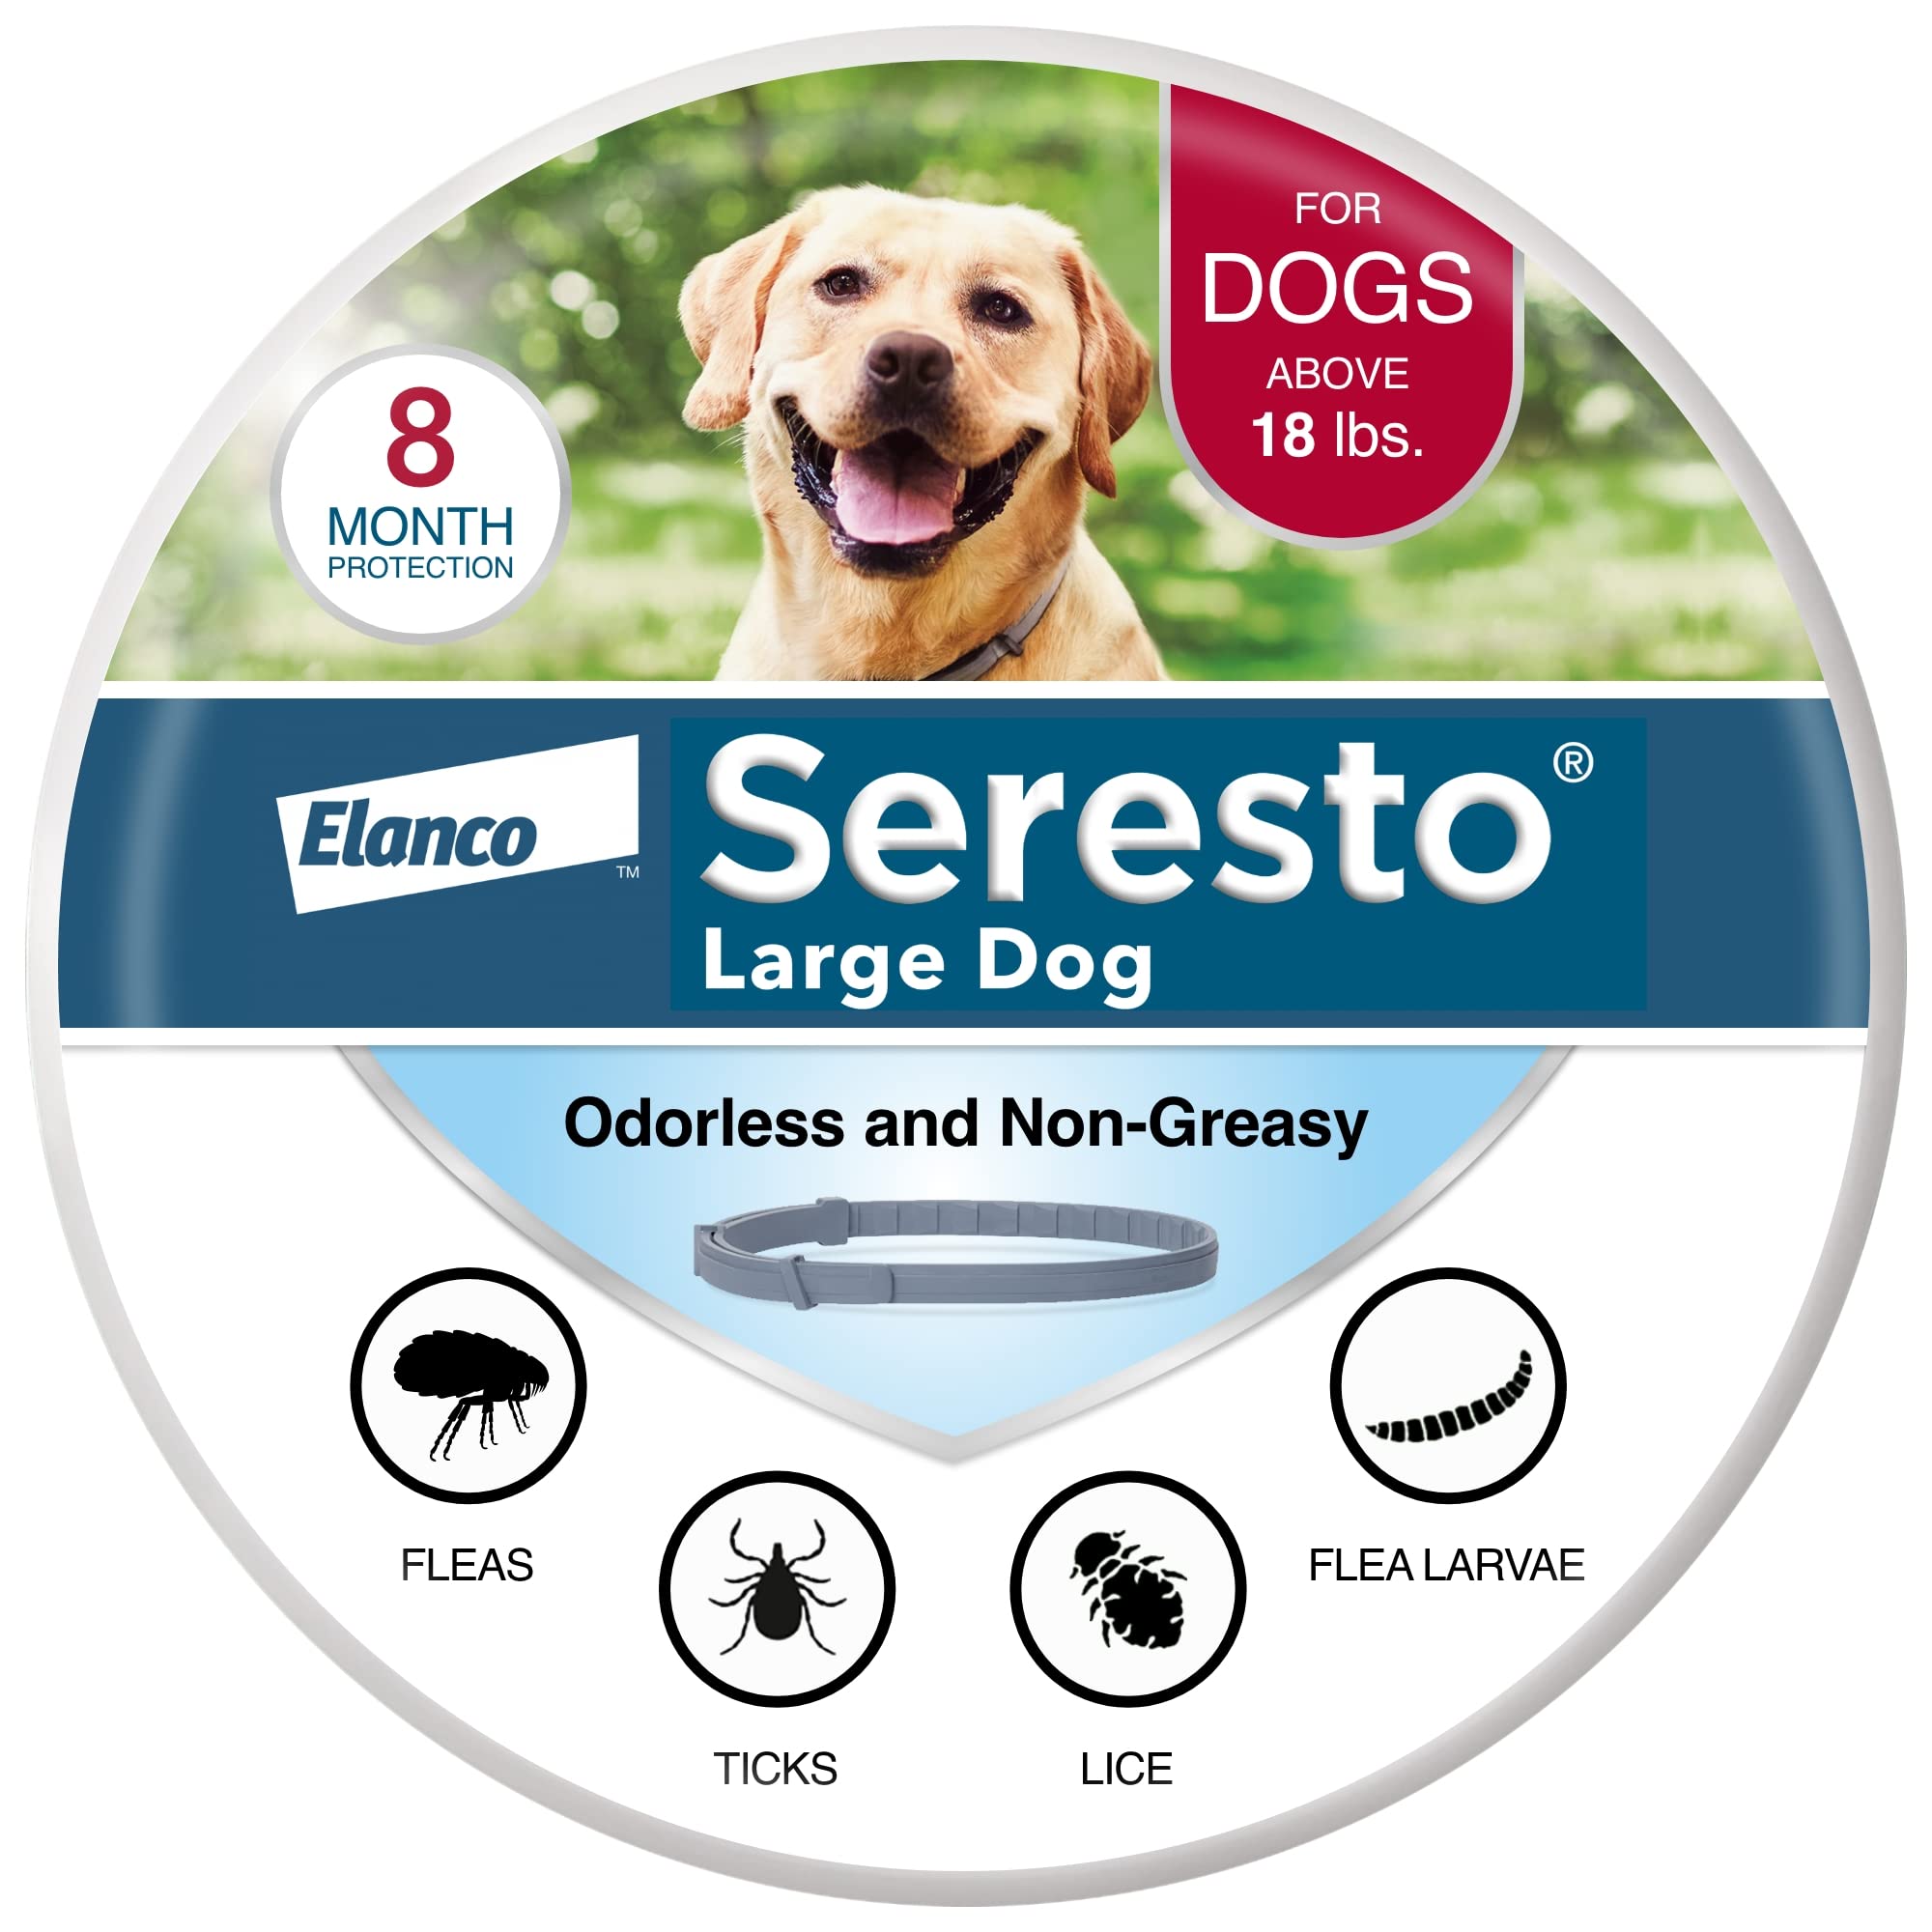 Seresto Collier de traitement et de prévention contre les puces et les tiques recommandé par les vétérinaires pour chiens de plus de 18 lb. | 8 mois de protection